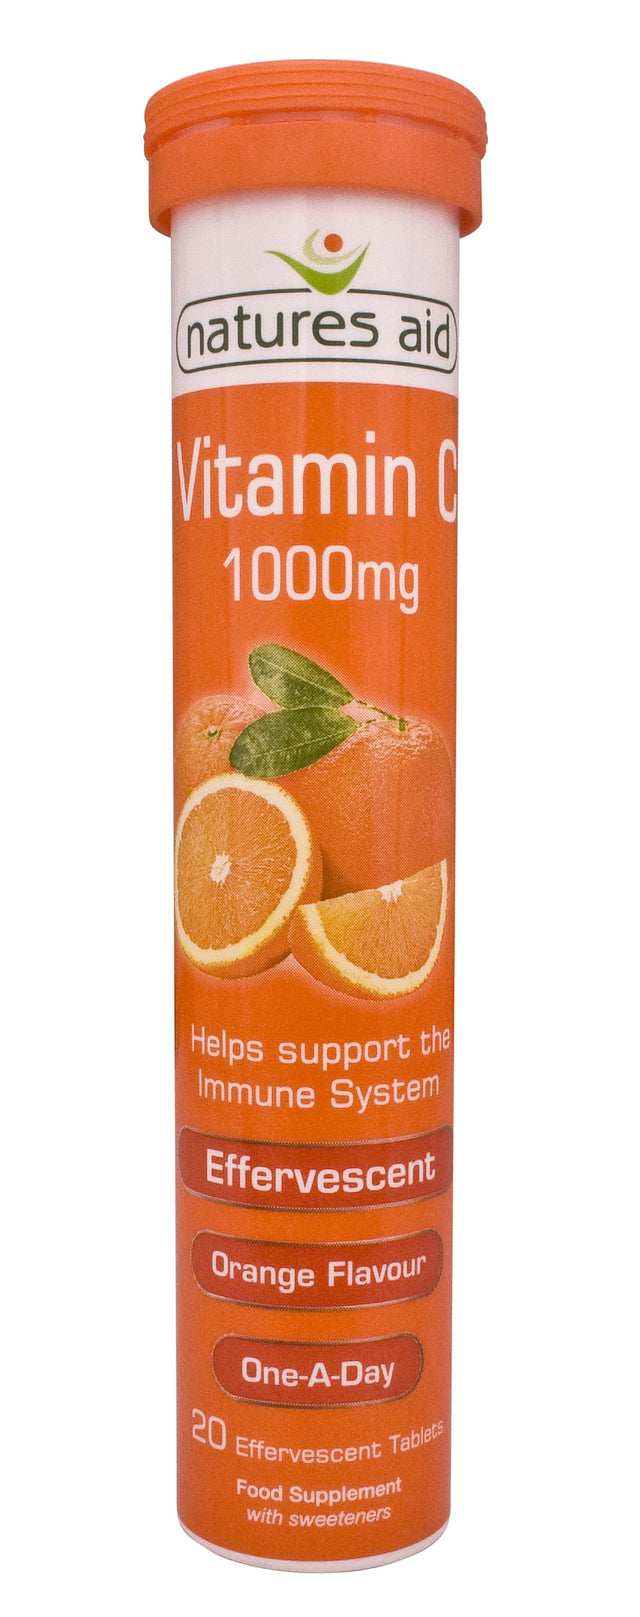 Natures Aid Vitamin C 1000mg Effervescent, Orange, 200iu, 20 Capsules